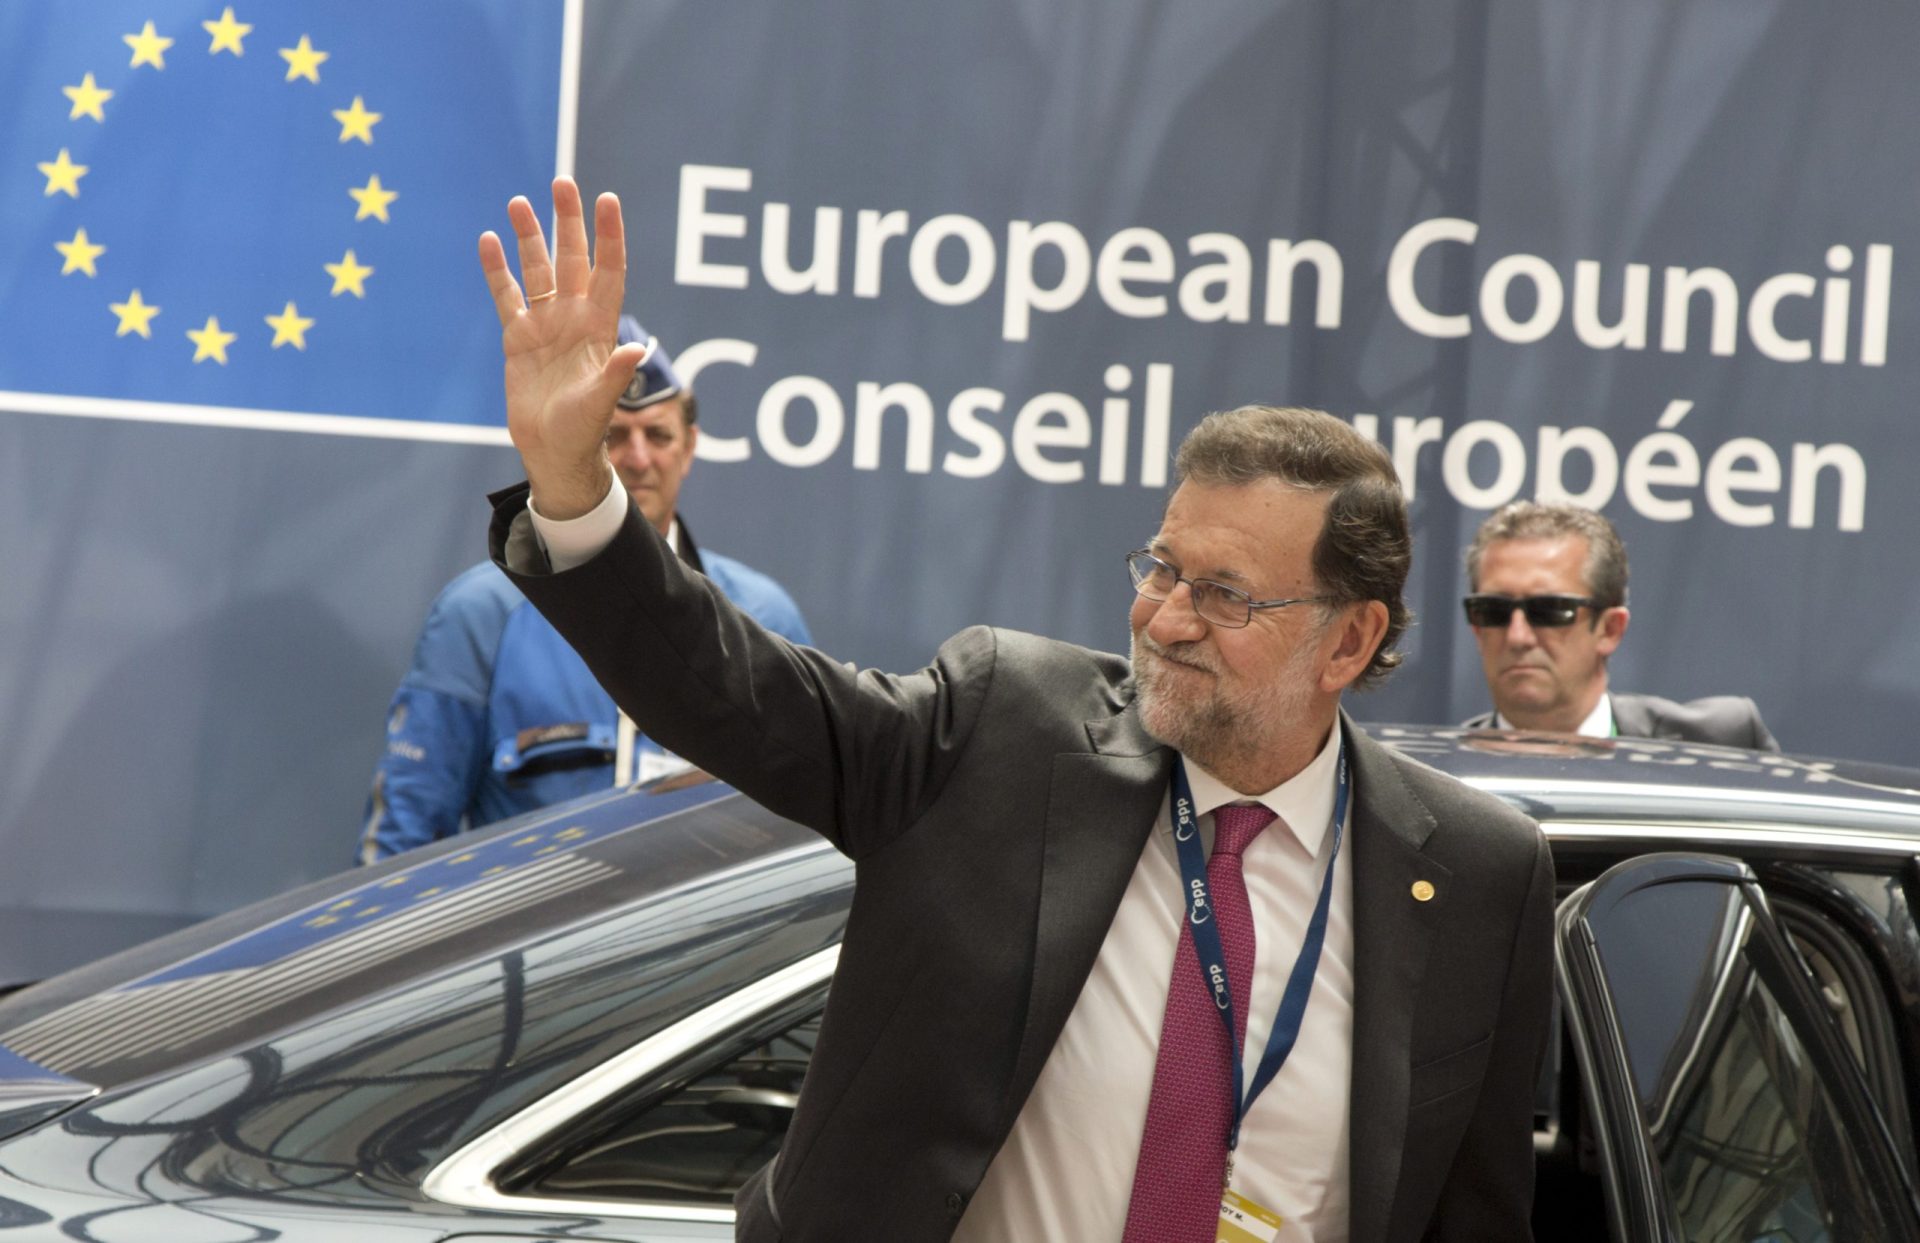 Rajoy começa hoje a tentar formar governo